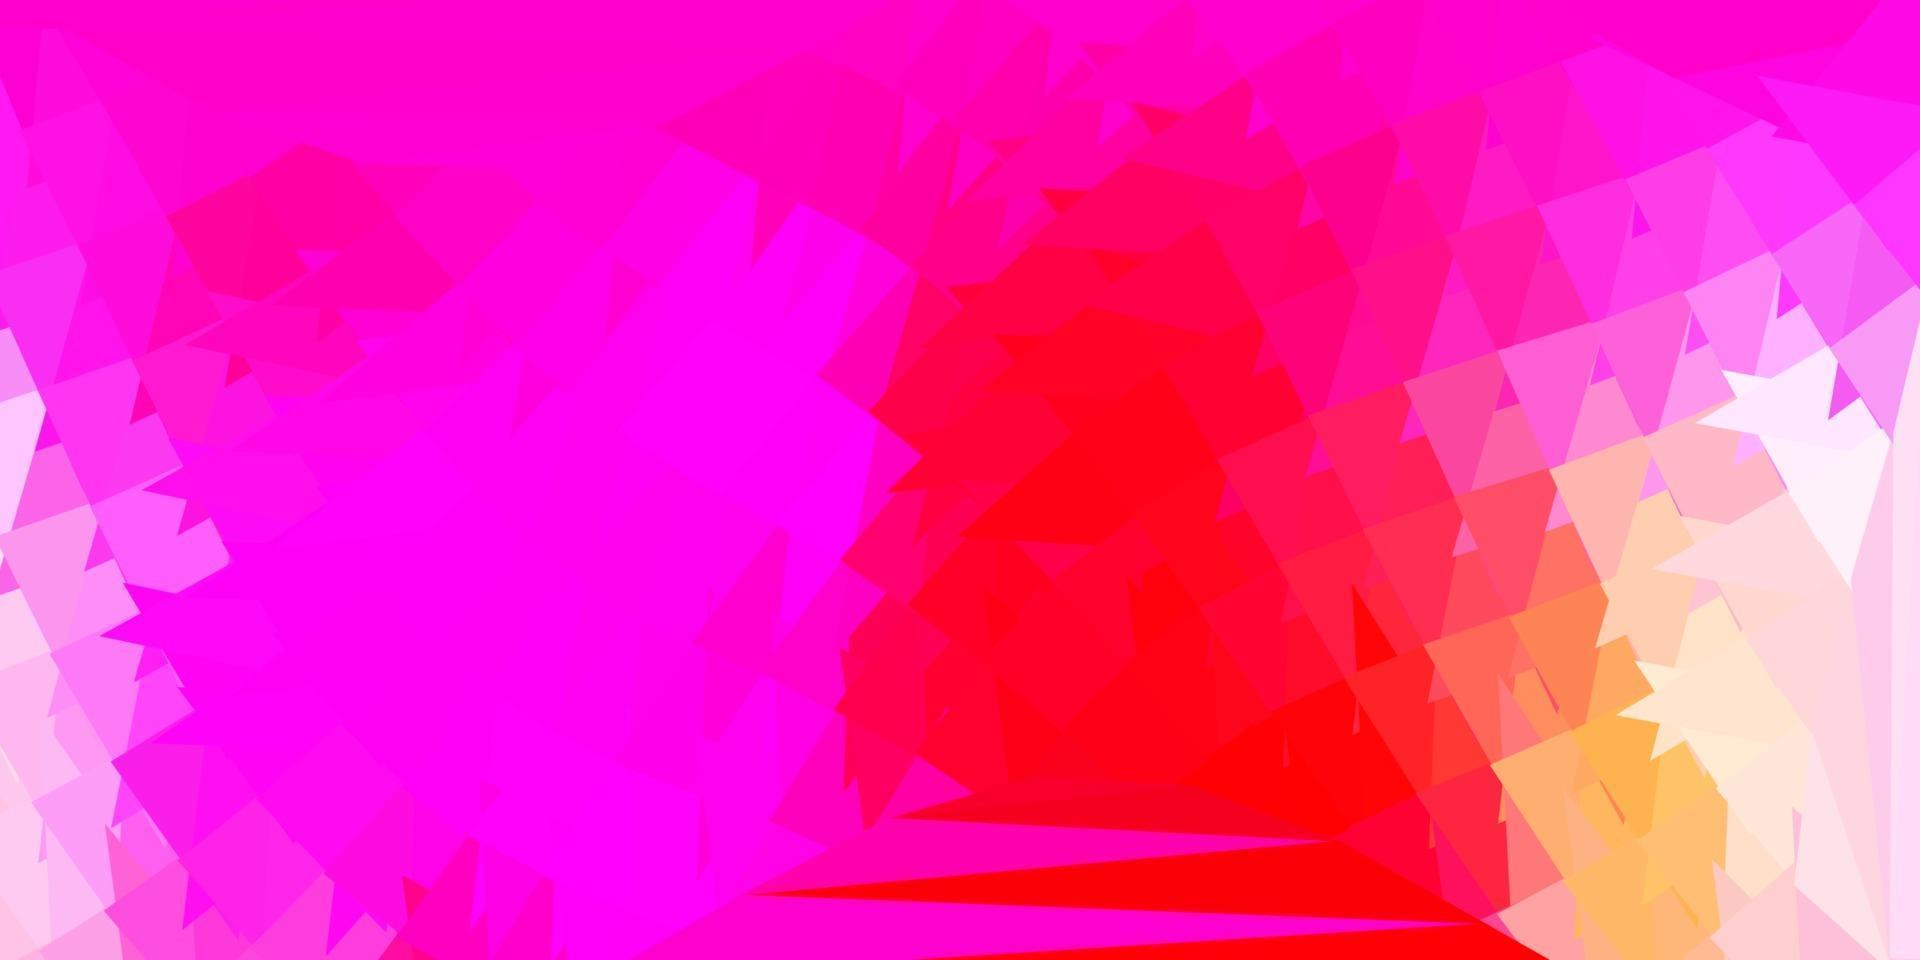 papel de parede poligonal geométrico de vetor rosa claro e amarelo.